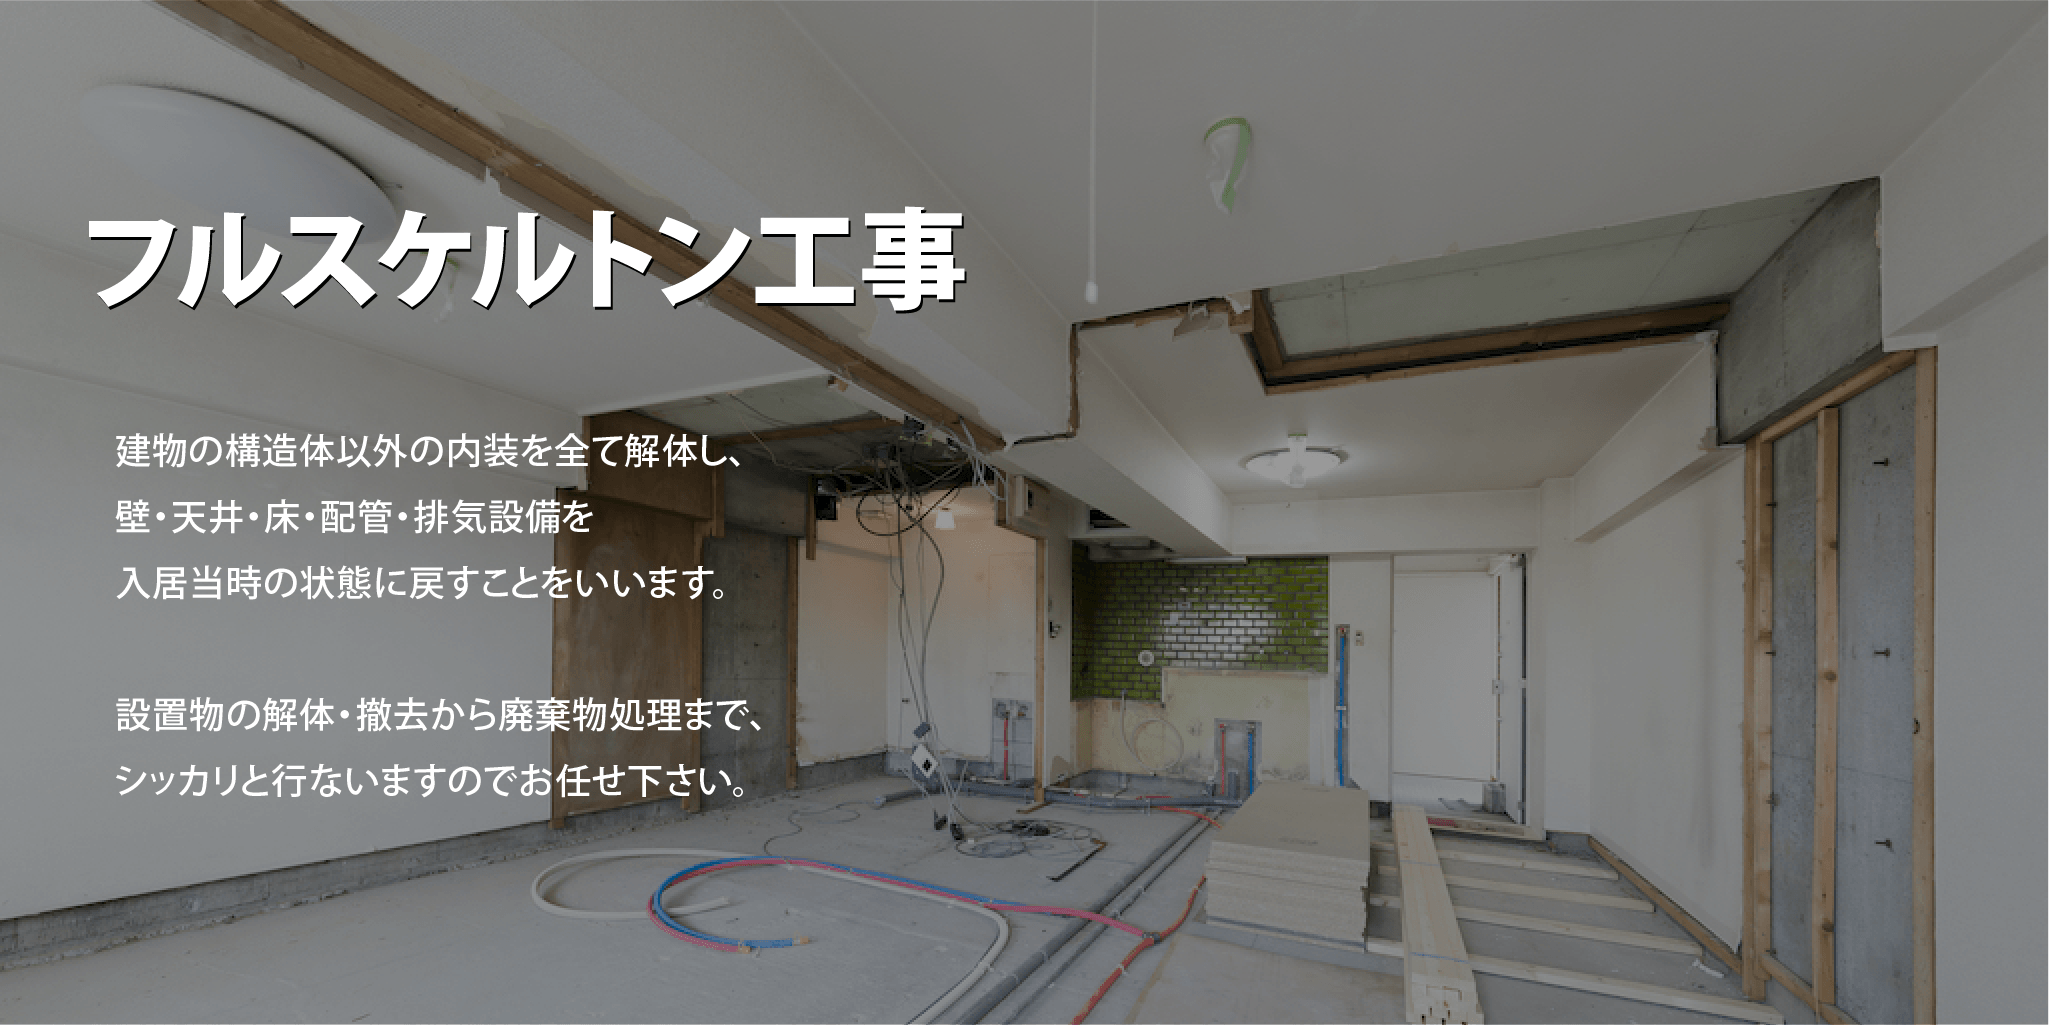 フルスケルトン工事-建物の構造体以外の内装を全て解体し、壁・天井・床・配管・排気設備を入居当時の状態に戻すことをいいます。設置物の解体・撤去から廃棄物処理まで、シッカリと行ないますのでお任せ下さい。